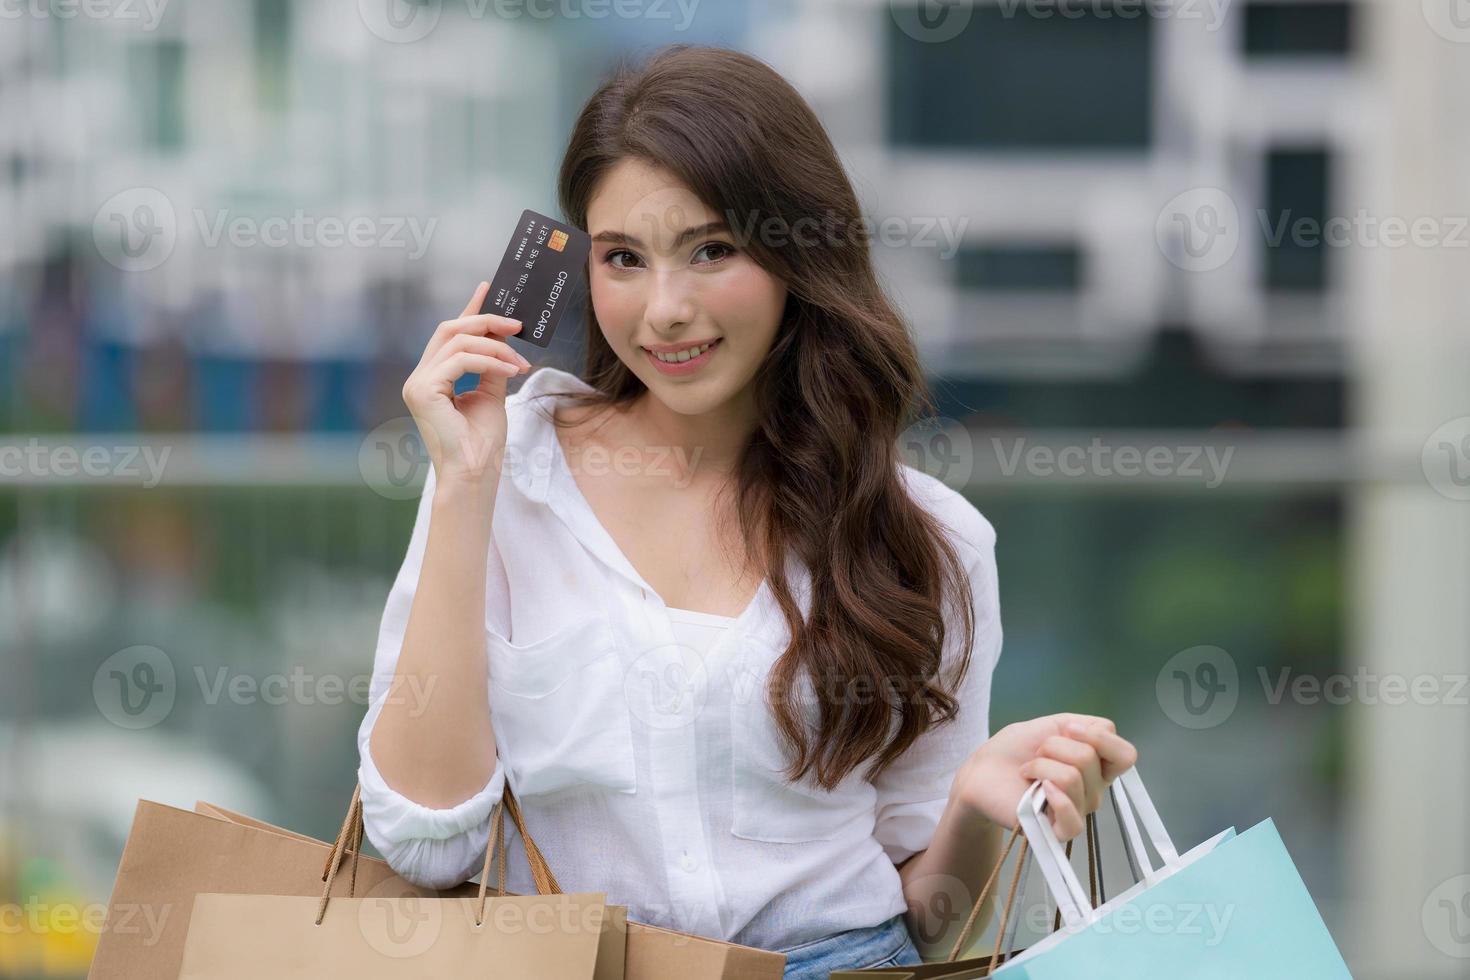 retrato ao ar livre de uma mulher feliz segurando sacolas de compras e um rosto sorridente foto